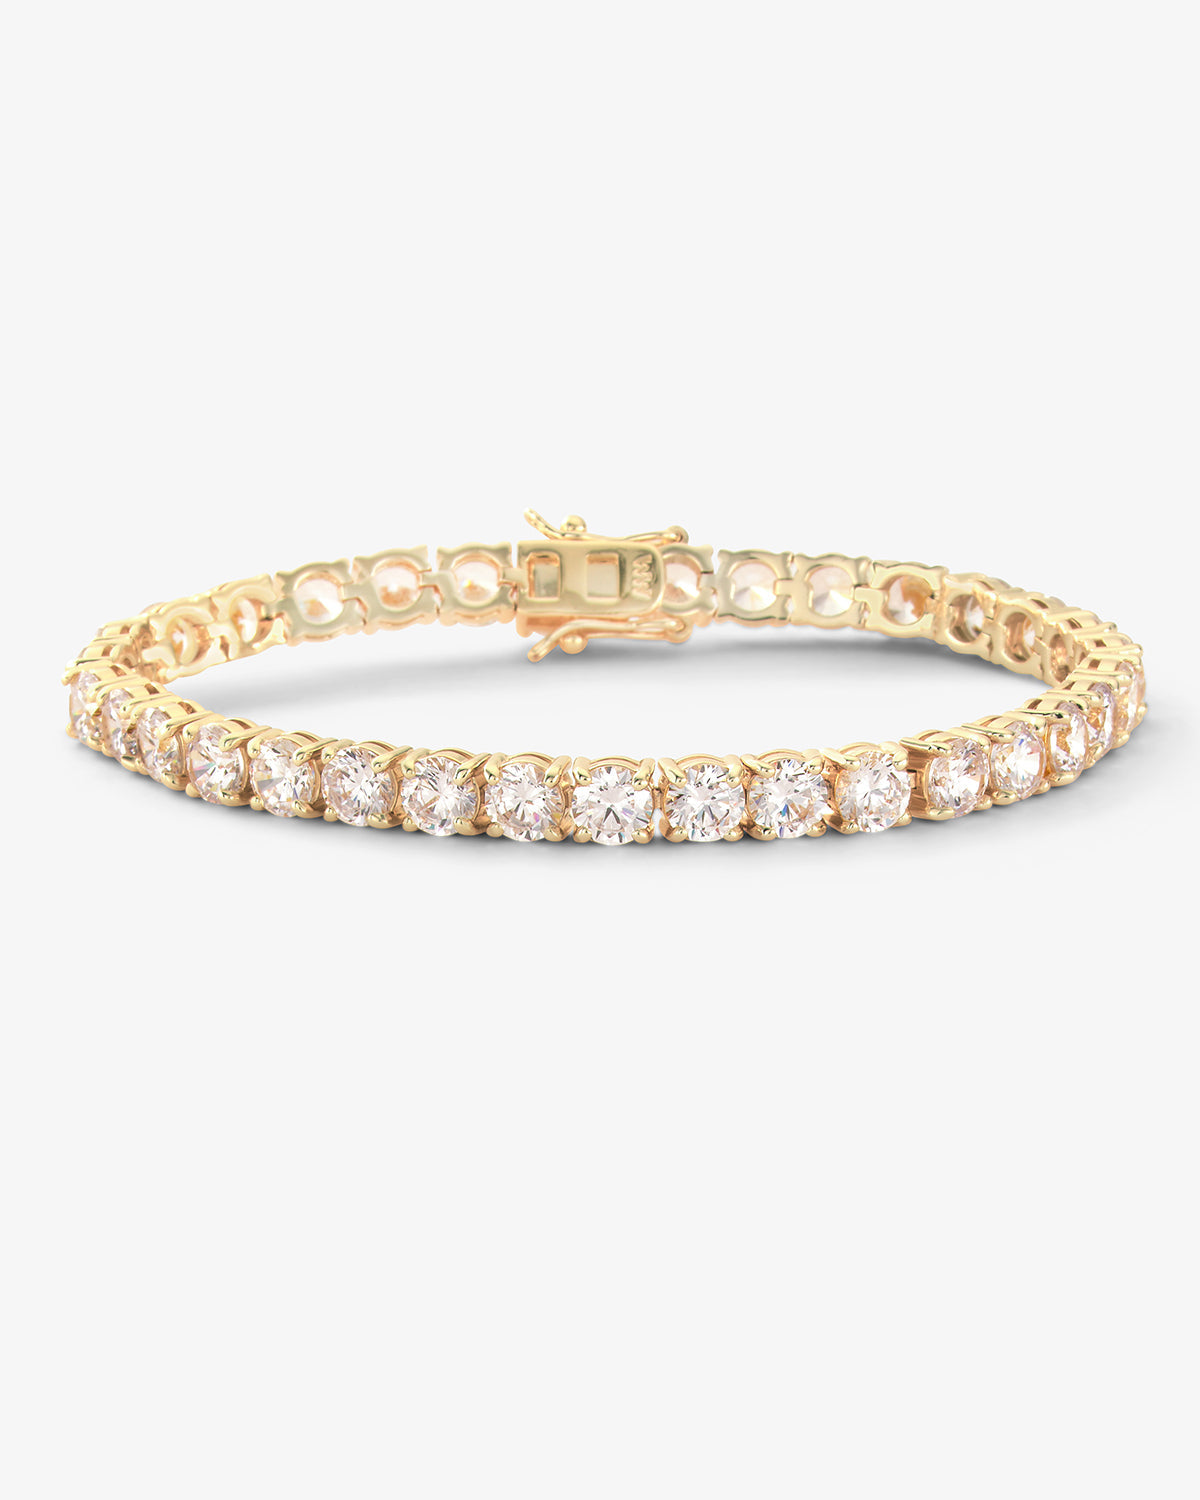 Mama Heiress Tennis Bracelet - Gold|White Diamondettes – Melinda Maria ...